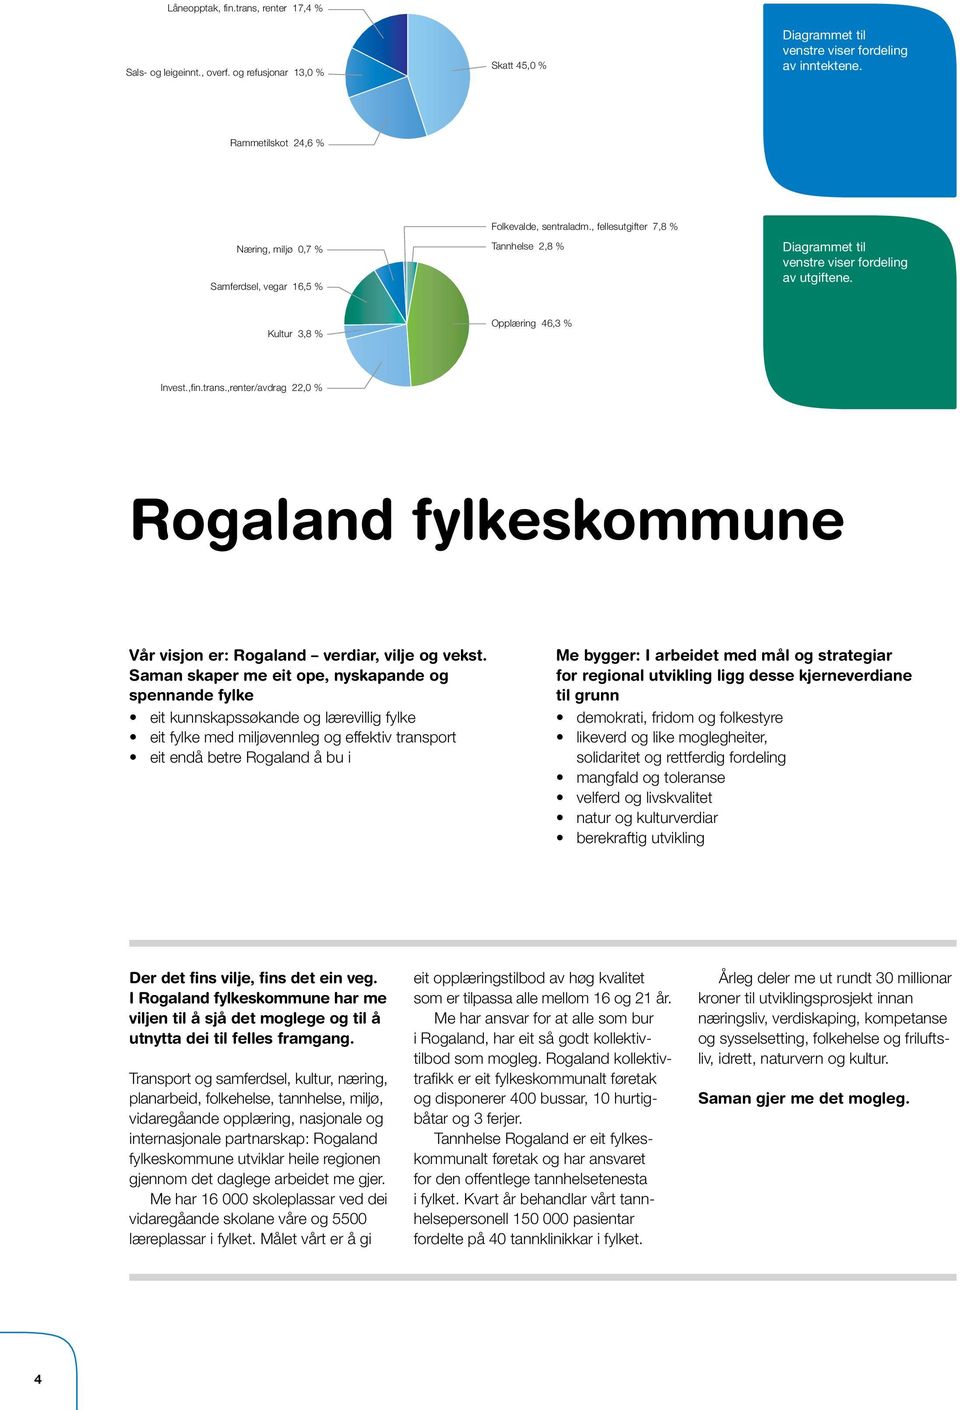 Kultur 3,8 % Opplæring 46,3 % Invest.,fin.trans.,renter/avdrag 22,0 % Rogaland fylkeskommune Vår visjon er: Rogaland verdiar, vilje og vekst.